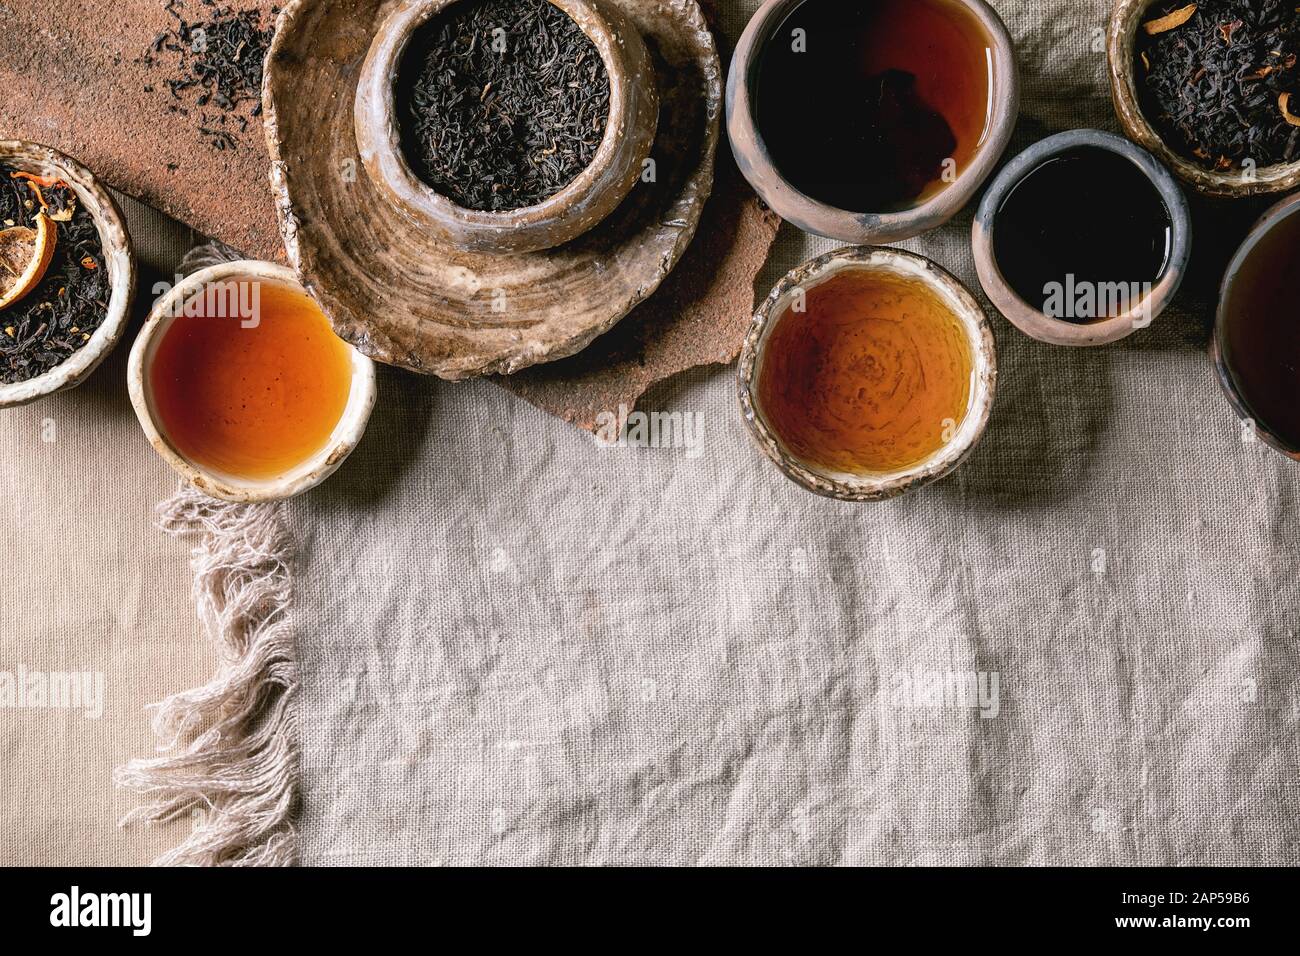 Variedad de té caliente y seco en verde y negro, en estilo tradicional y wabi sabi refractario artesanía cerámica vasos y copas, servidas en tela de lino como backgrou Foto de stock